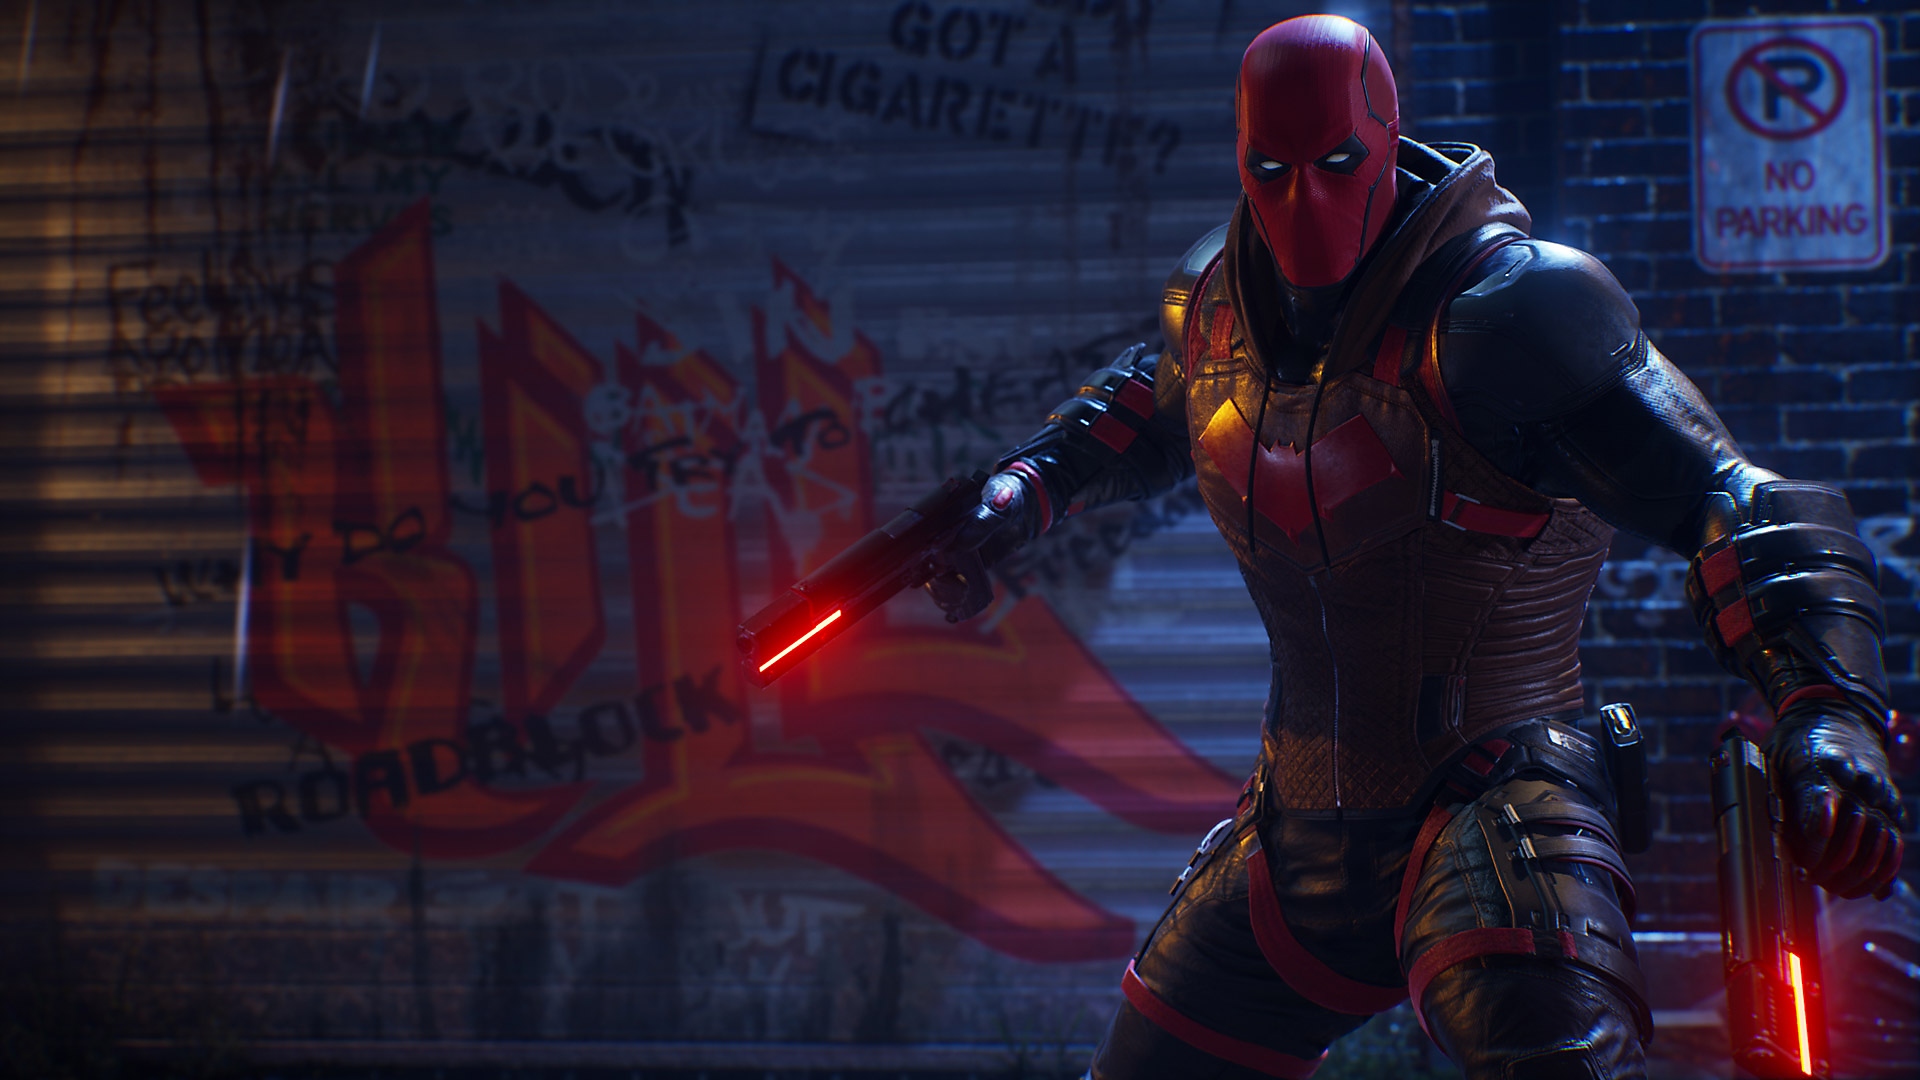 Skärmbild från Gotham Knights – Red Hood med vapen